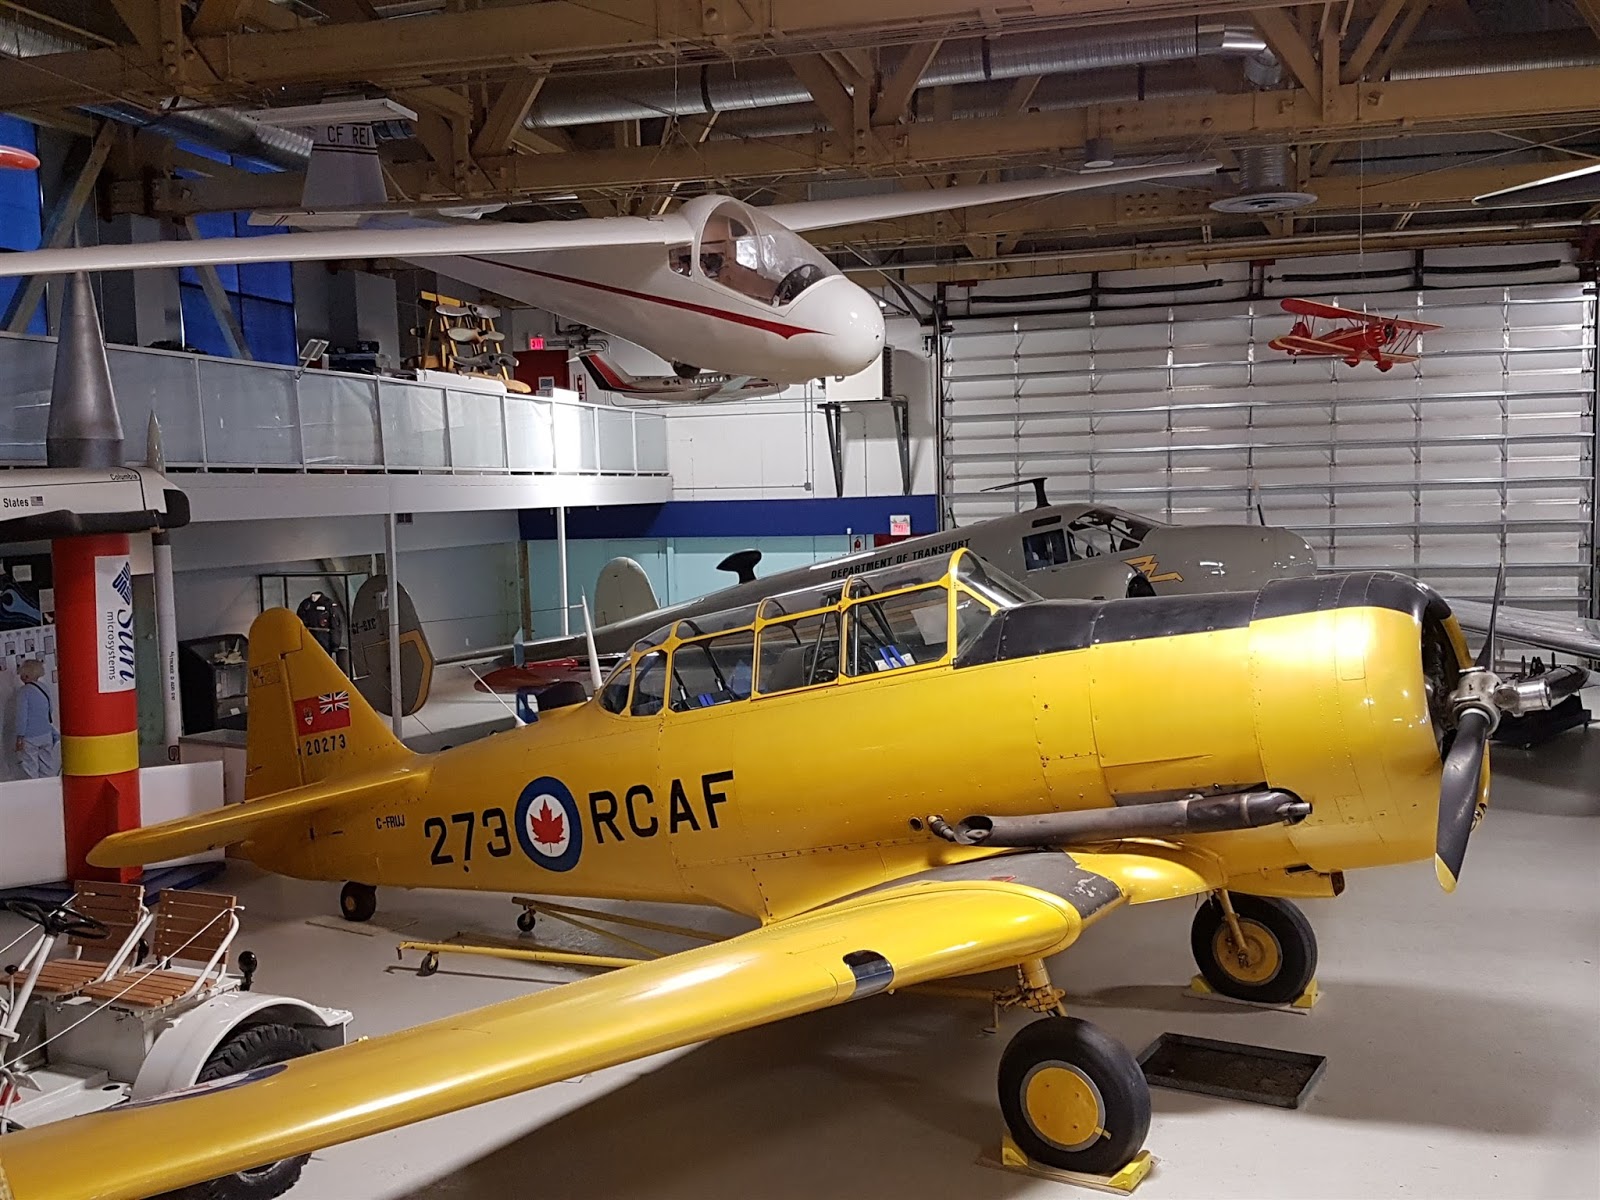 The Hangar Flight Museum, Calgary